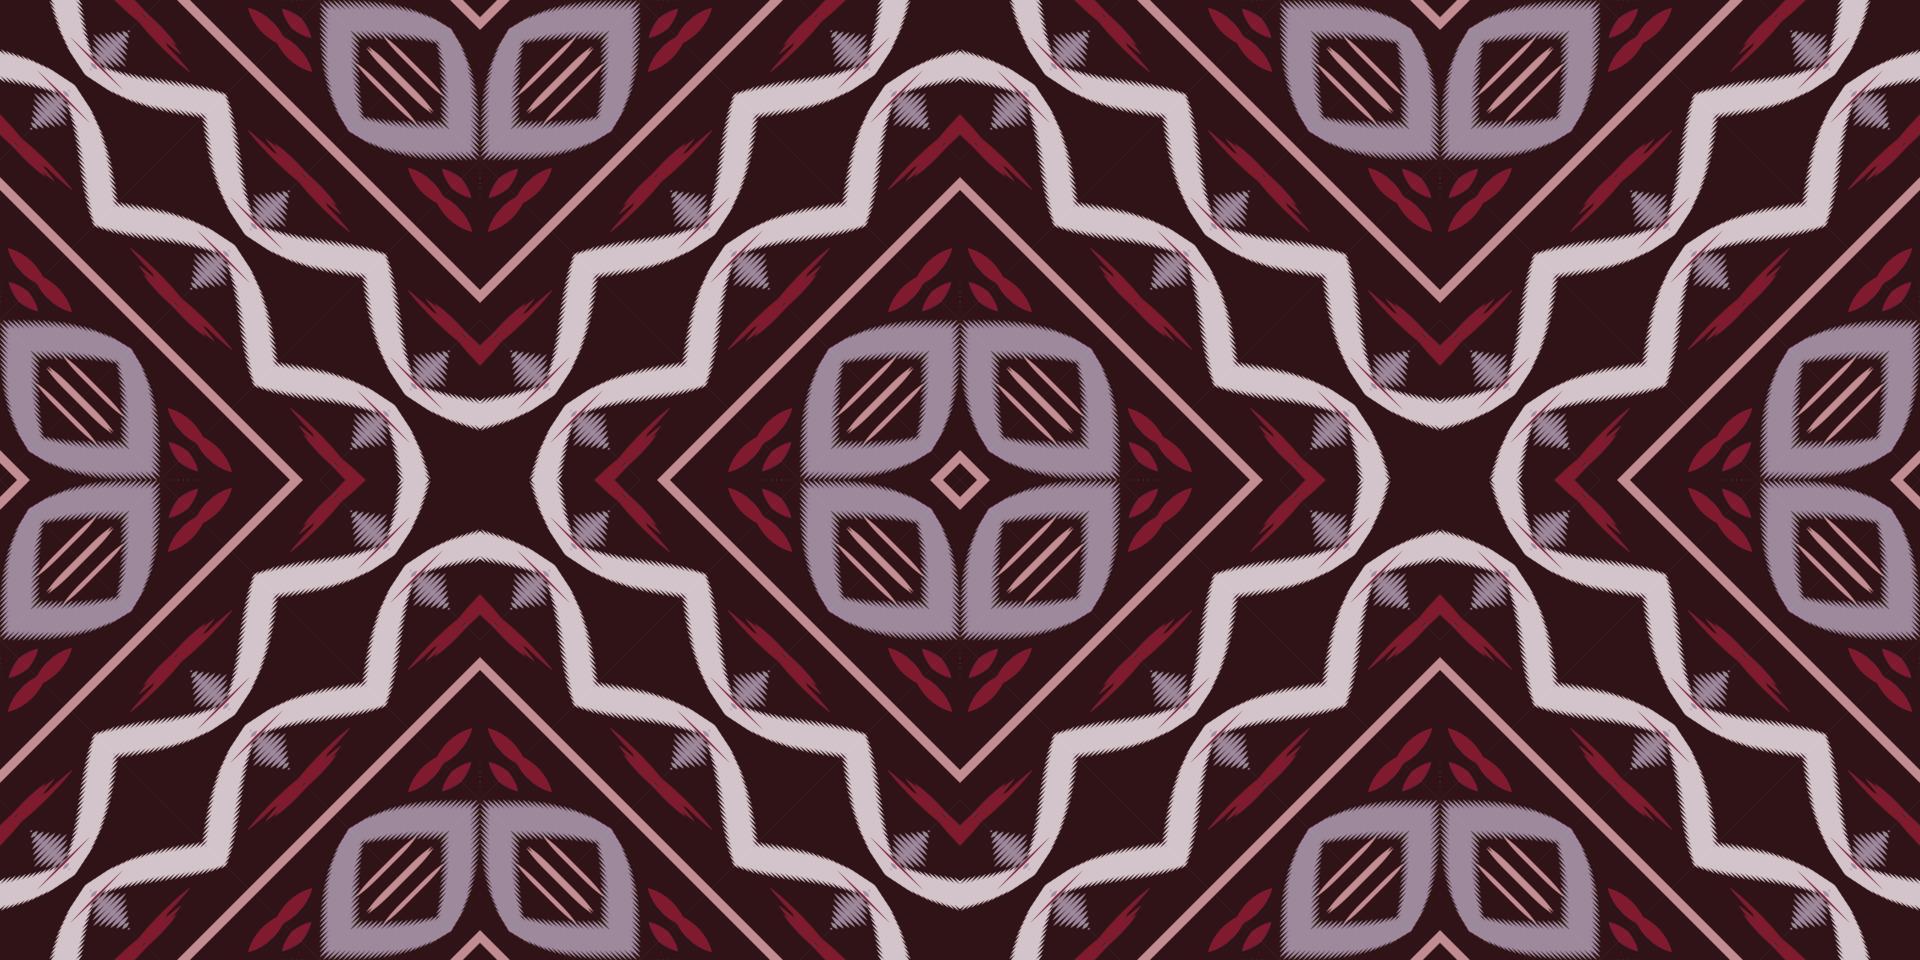 ikat pontilha padrão sem emenda africano tribal. étnico geométrico ikkat batik vetor digital design têxtil para estampas tecido saree mughal pincel símbolo faixas textura kurti kurtis kurtas